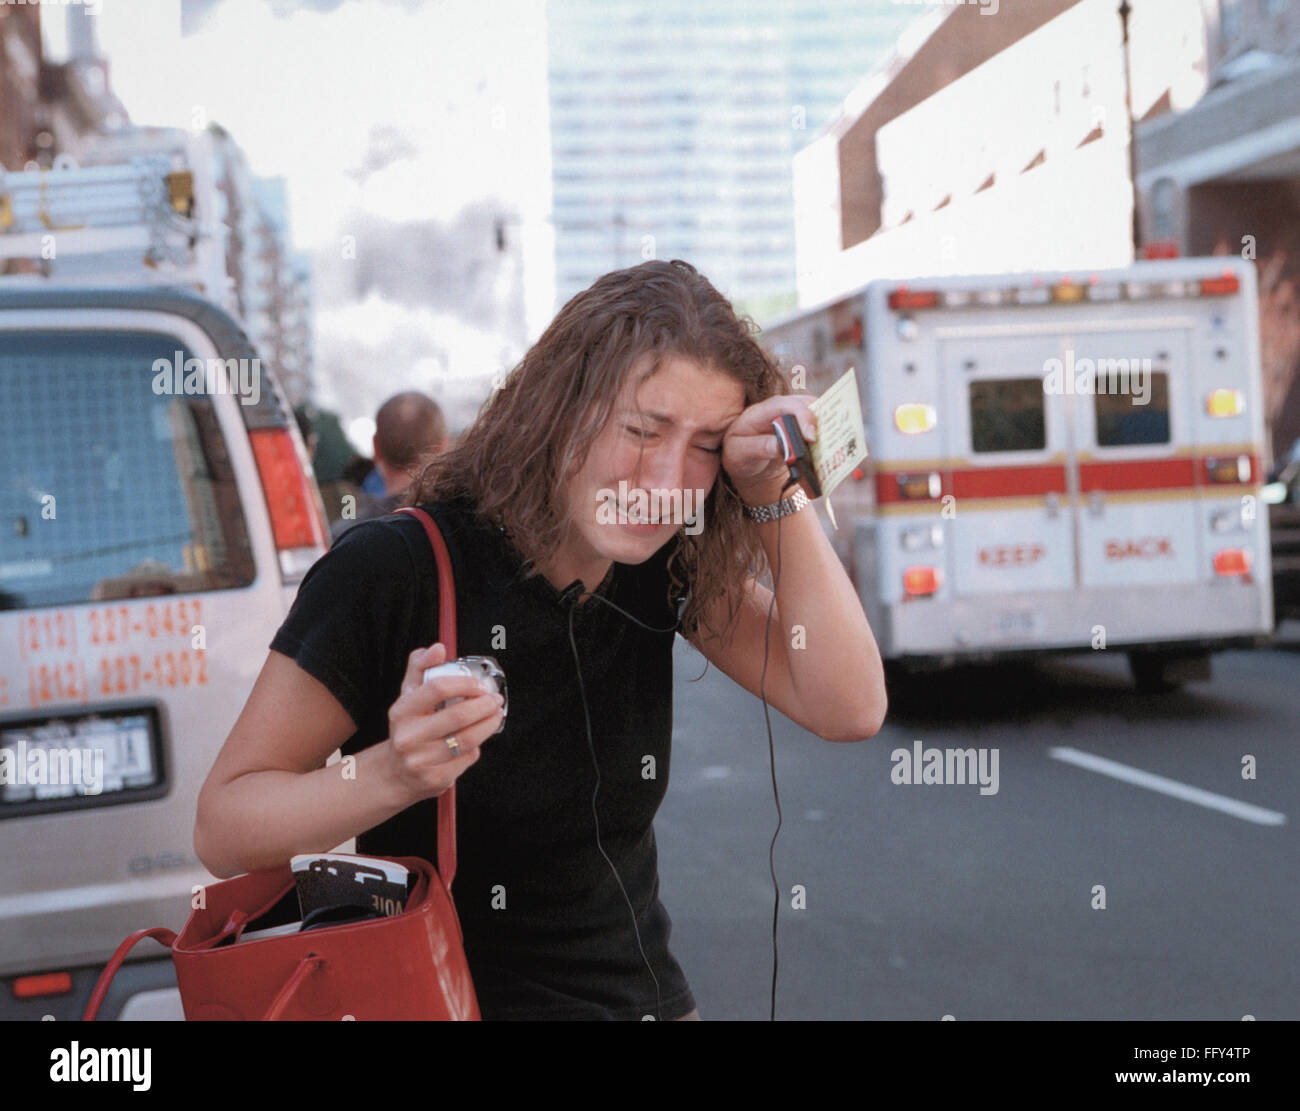 NEW YORK : le 11 septembre. /NA jeune femme pleurer dans Lower Manhattan, après les attaques terroristes du 11 septembre 2001. Photographie par Don Halasy. Banque D'Images